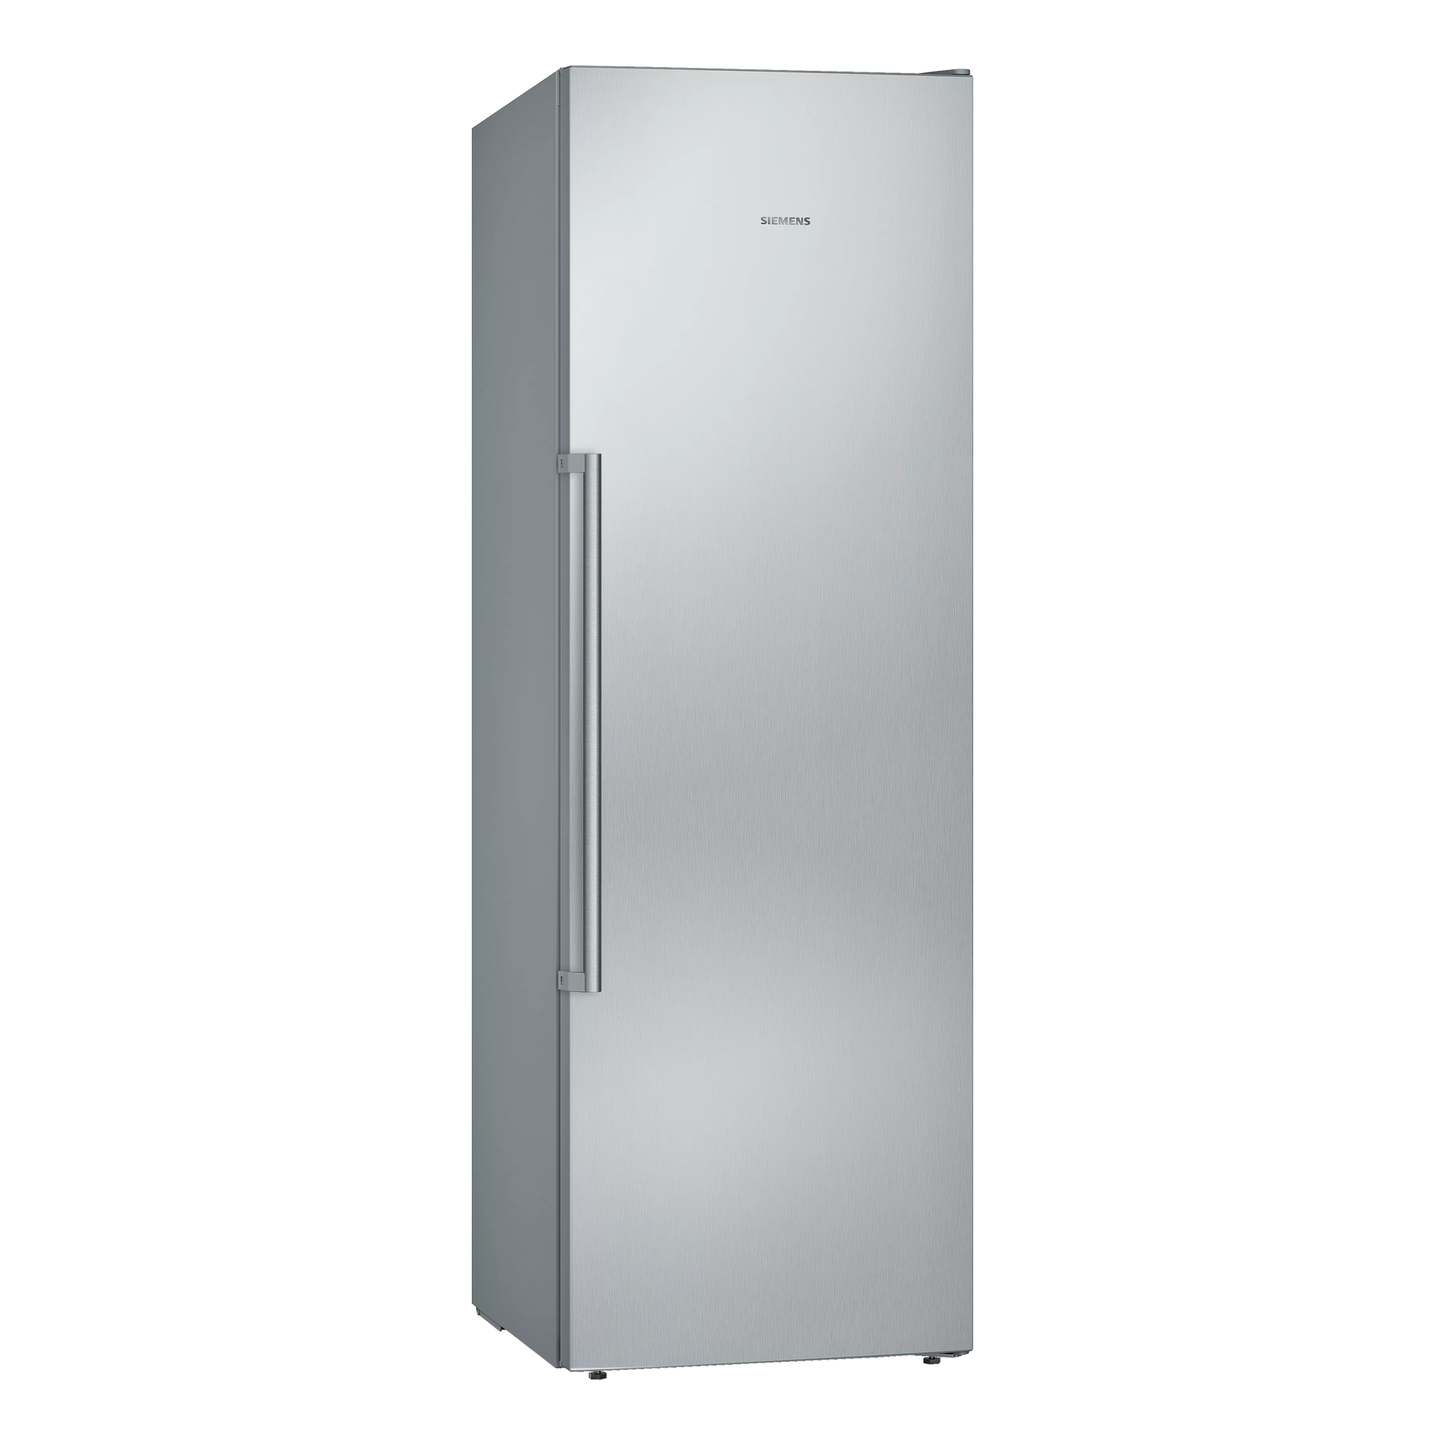 SIEMENS iQ500 GS36NAIFV 600mm Freestanding Freezer | Made in Europe |